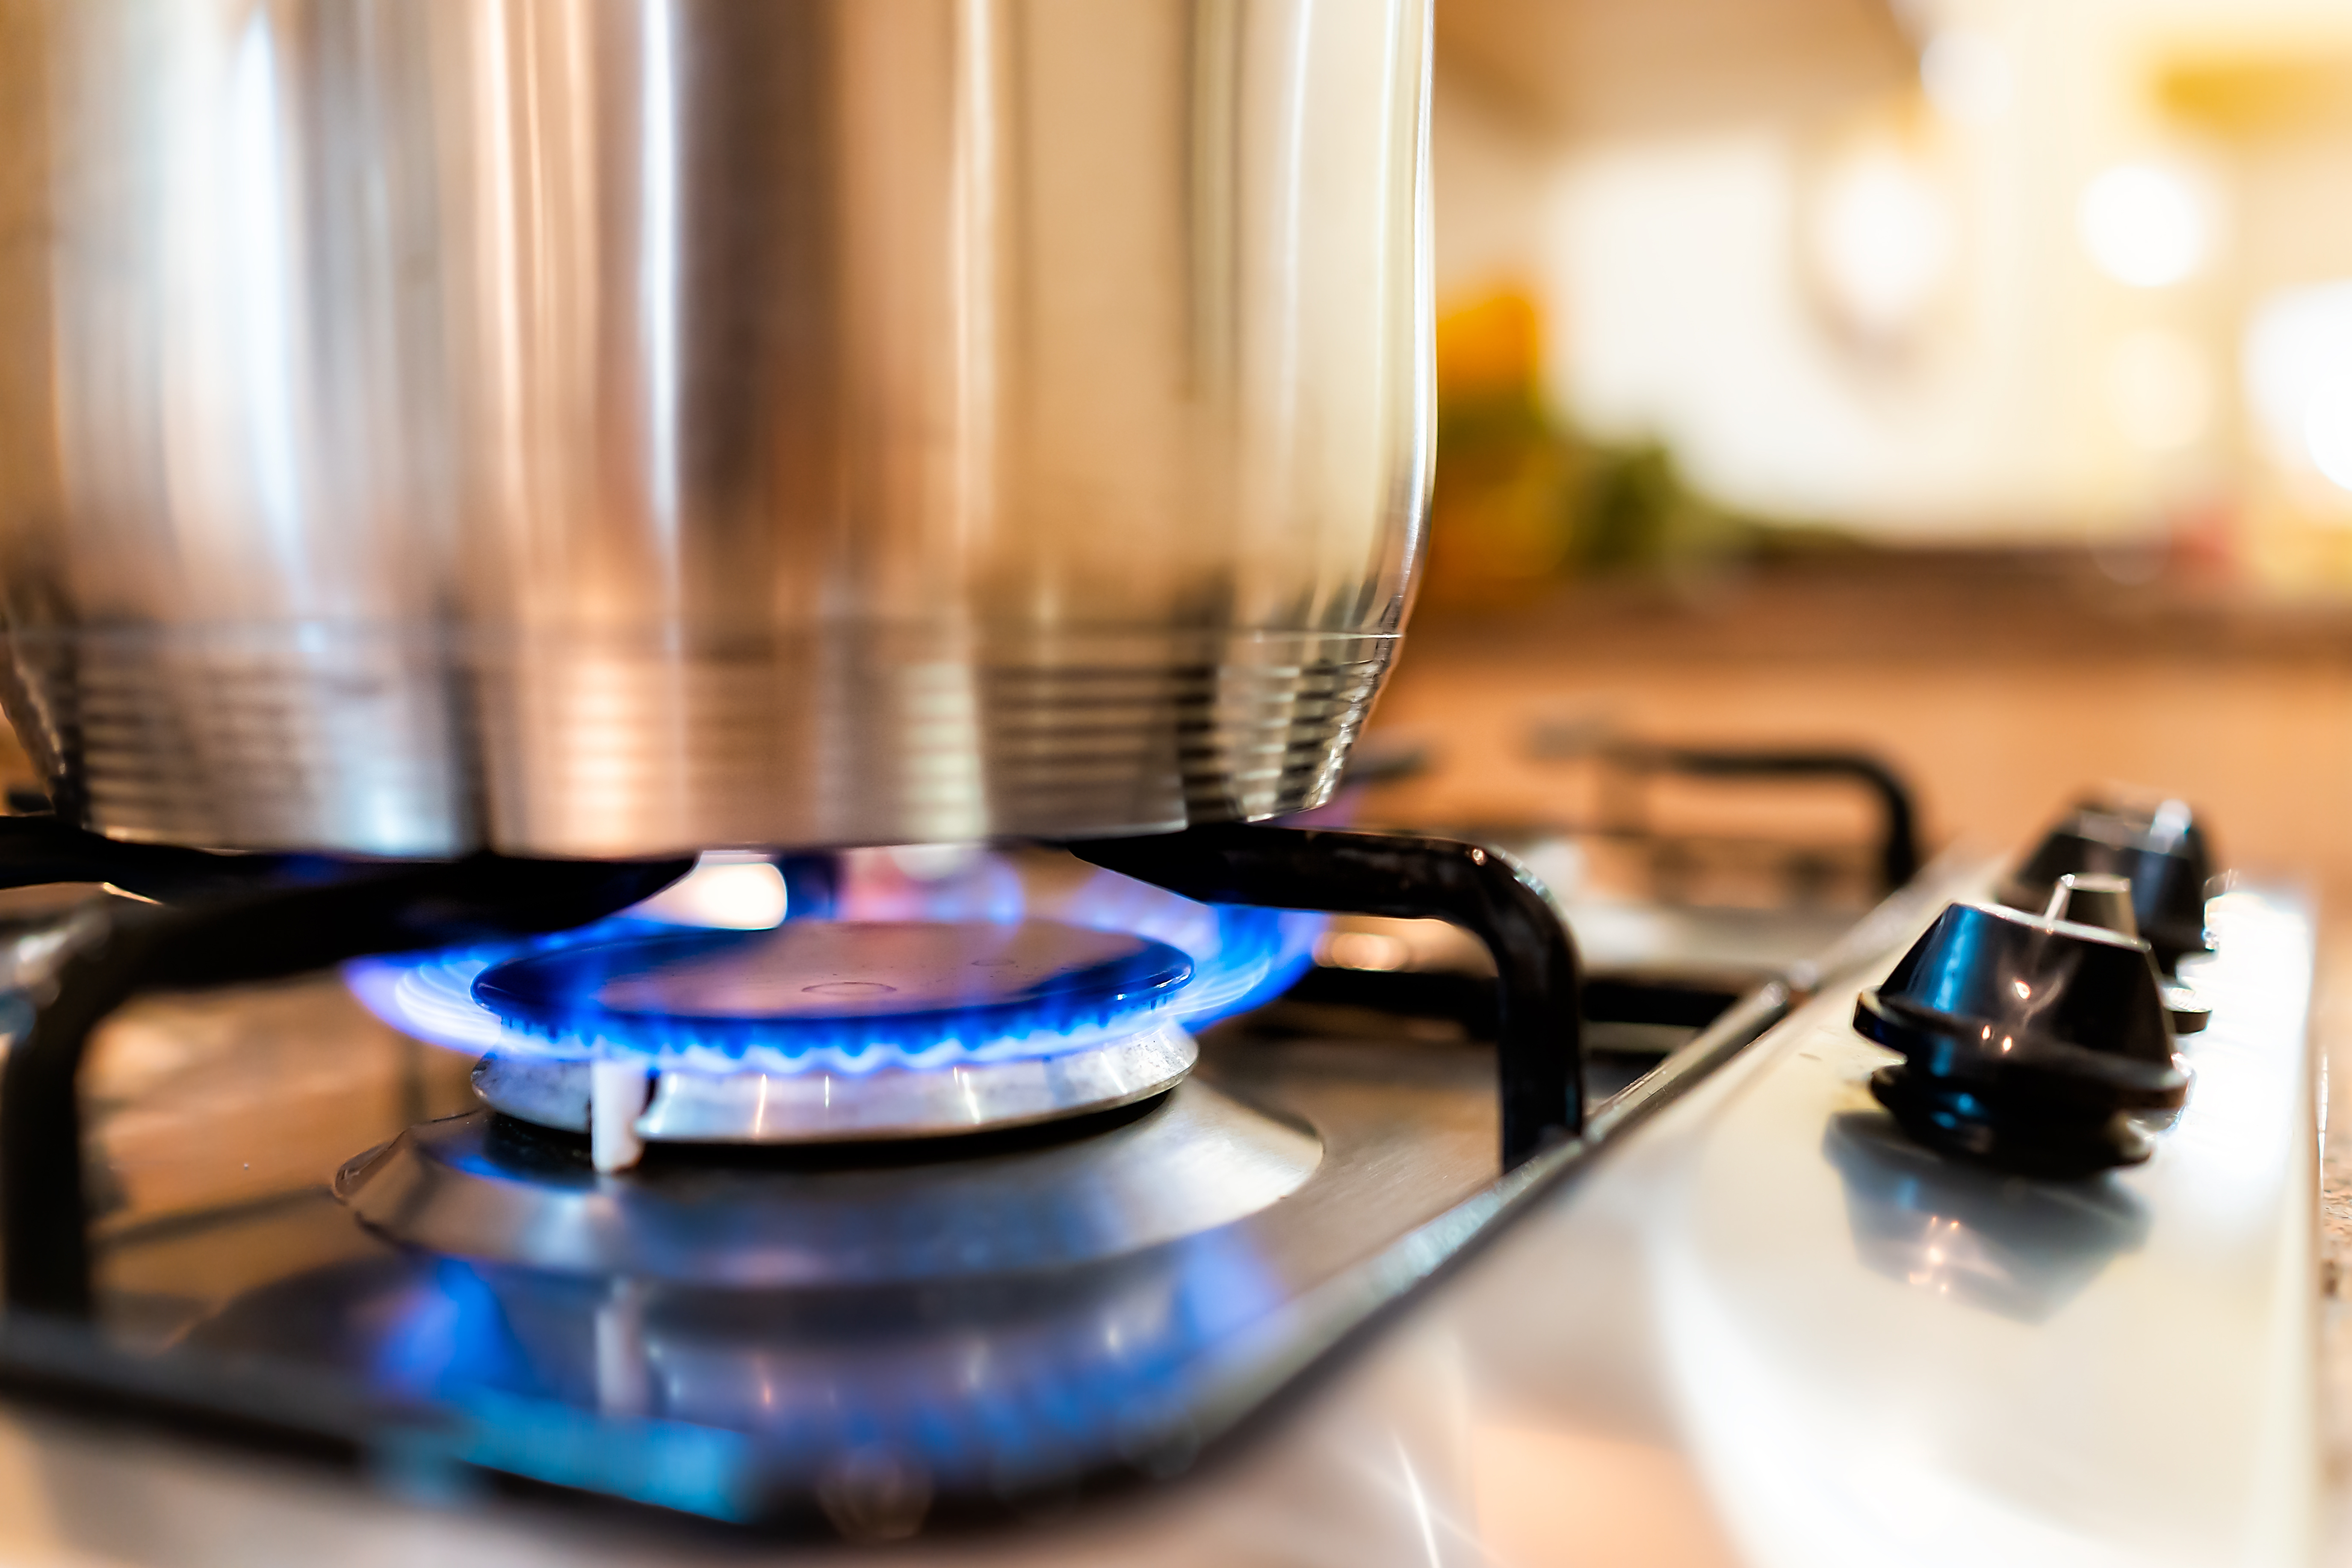 ¿Estás pensando en cambiarte la cocina y no sabes si elegir una cocina de gas o una eléctrica? Te contamos el secreto para que elijas la mejor opción.